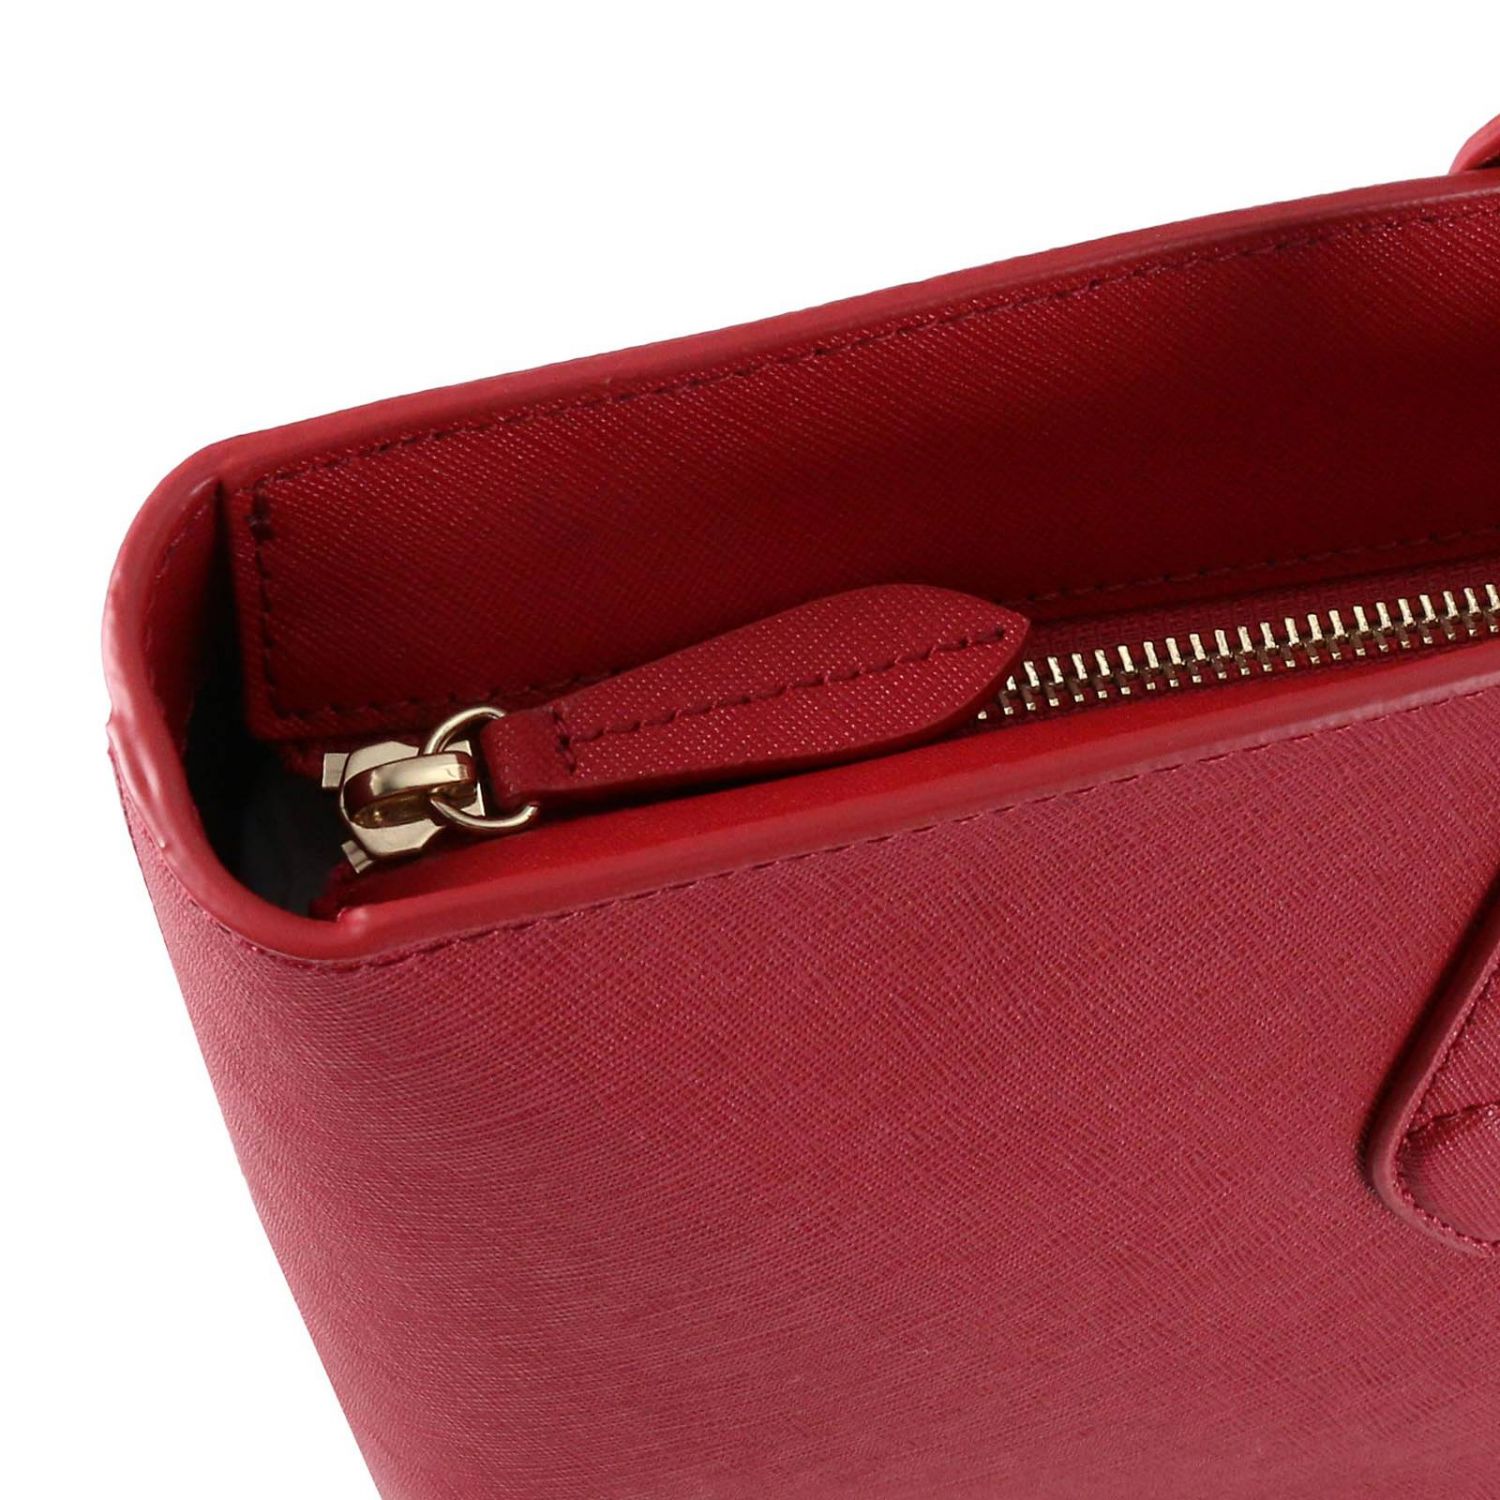 Twin Set Outlet: Shoulder bag women | Shoulder Bag Twin Set Women Red ...